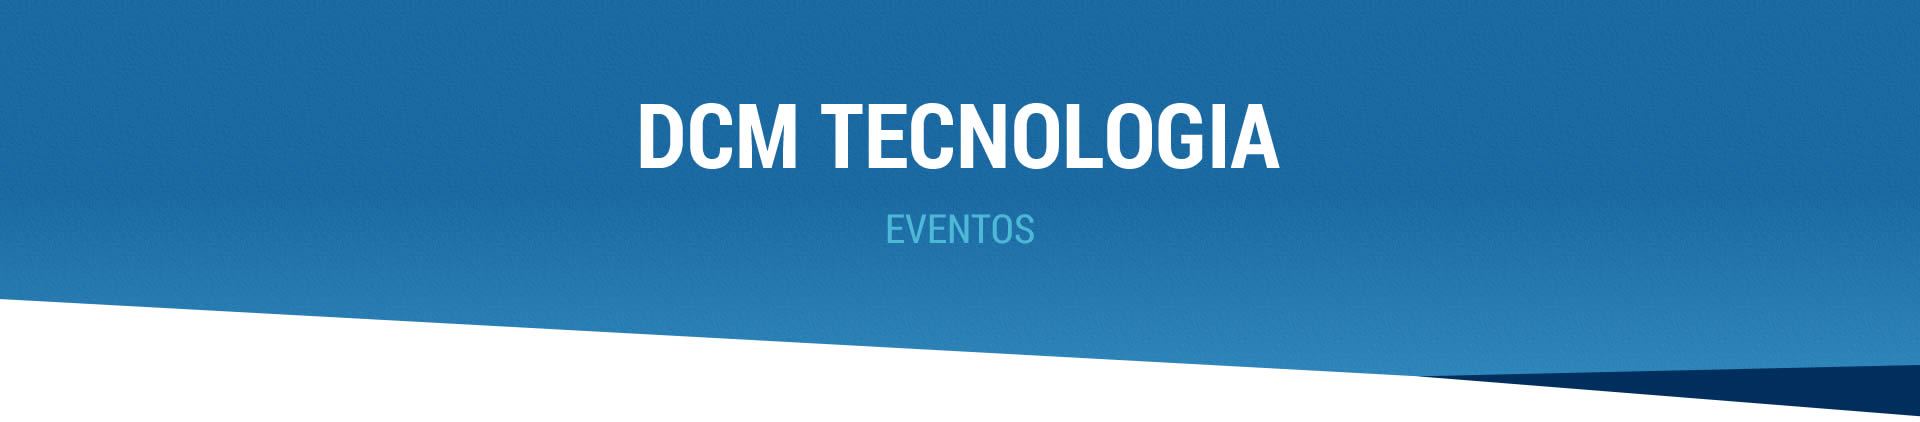 Eventos DCM Tecnologia